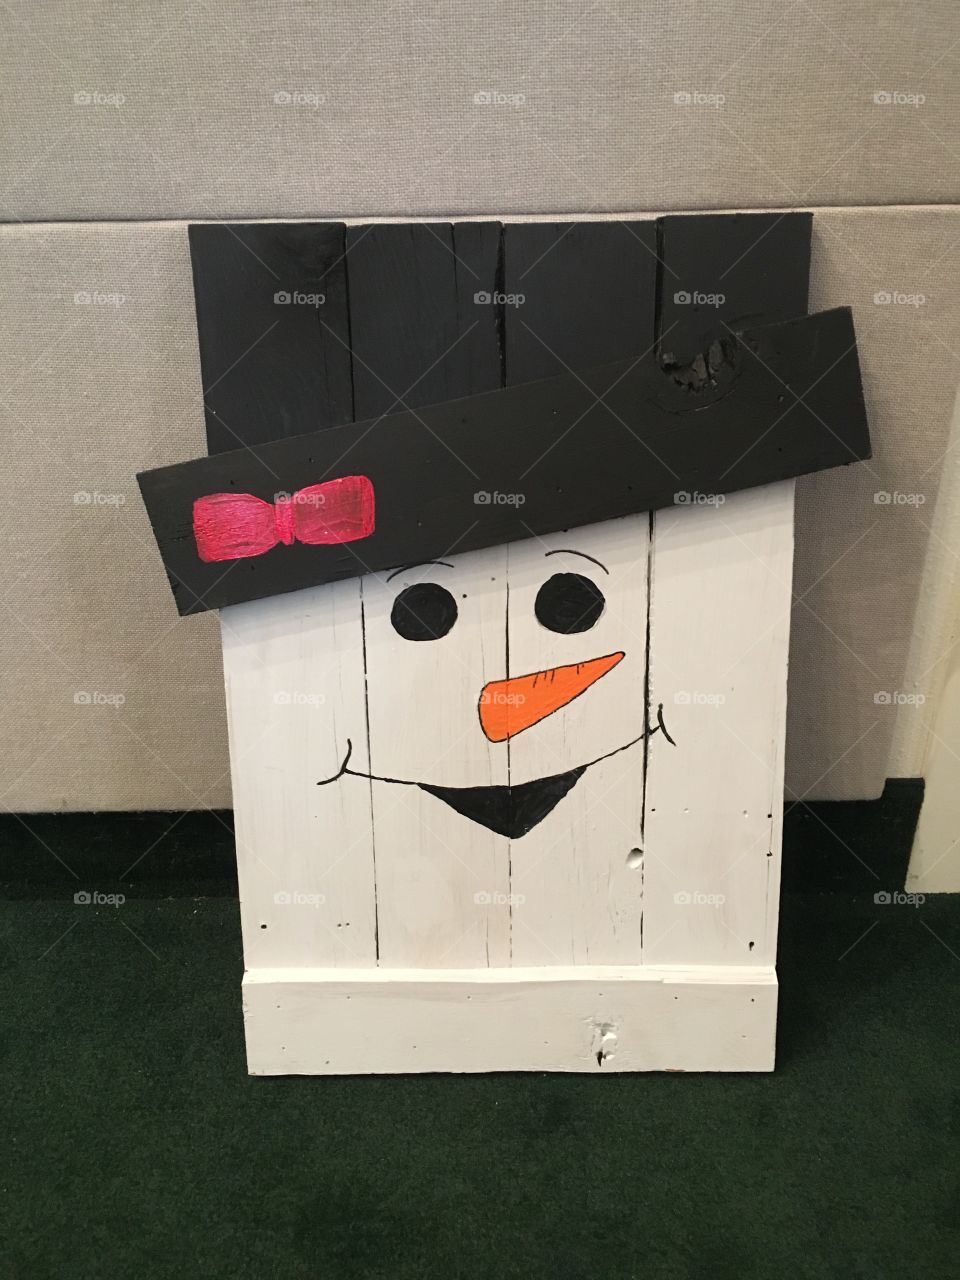 Happy Snowman 